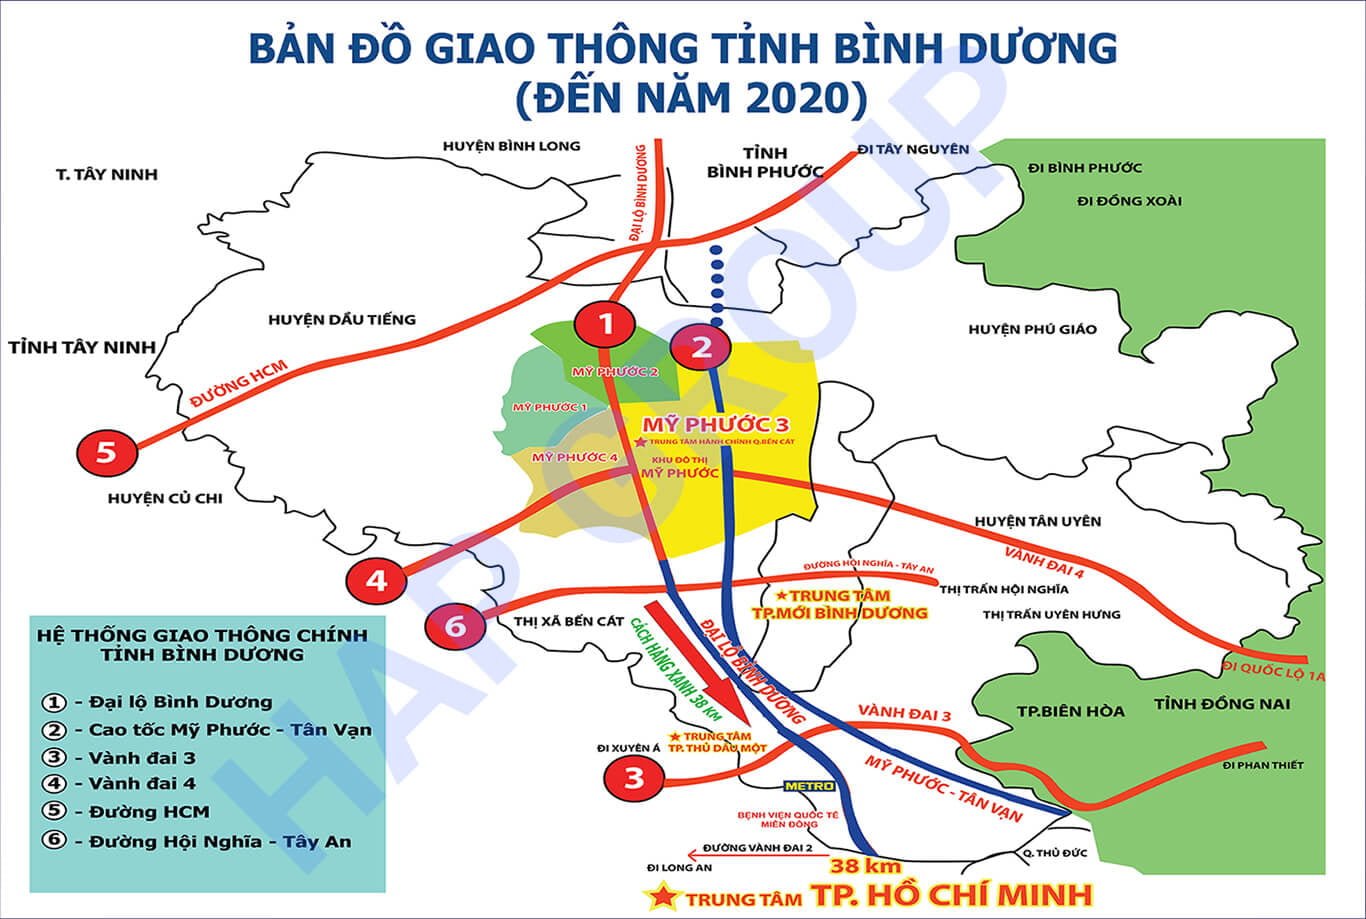 Ban do Giao thong Tinh Binh Duong